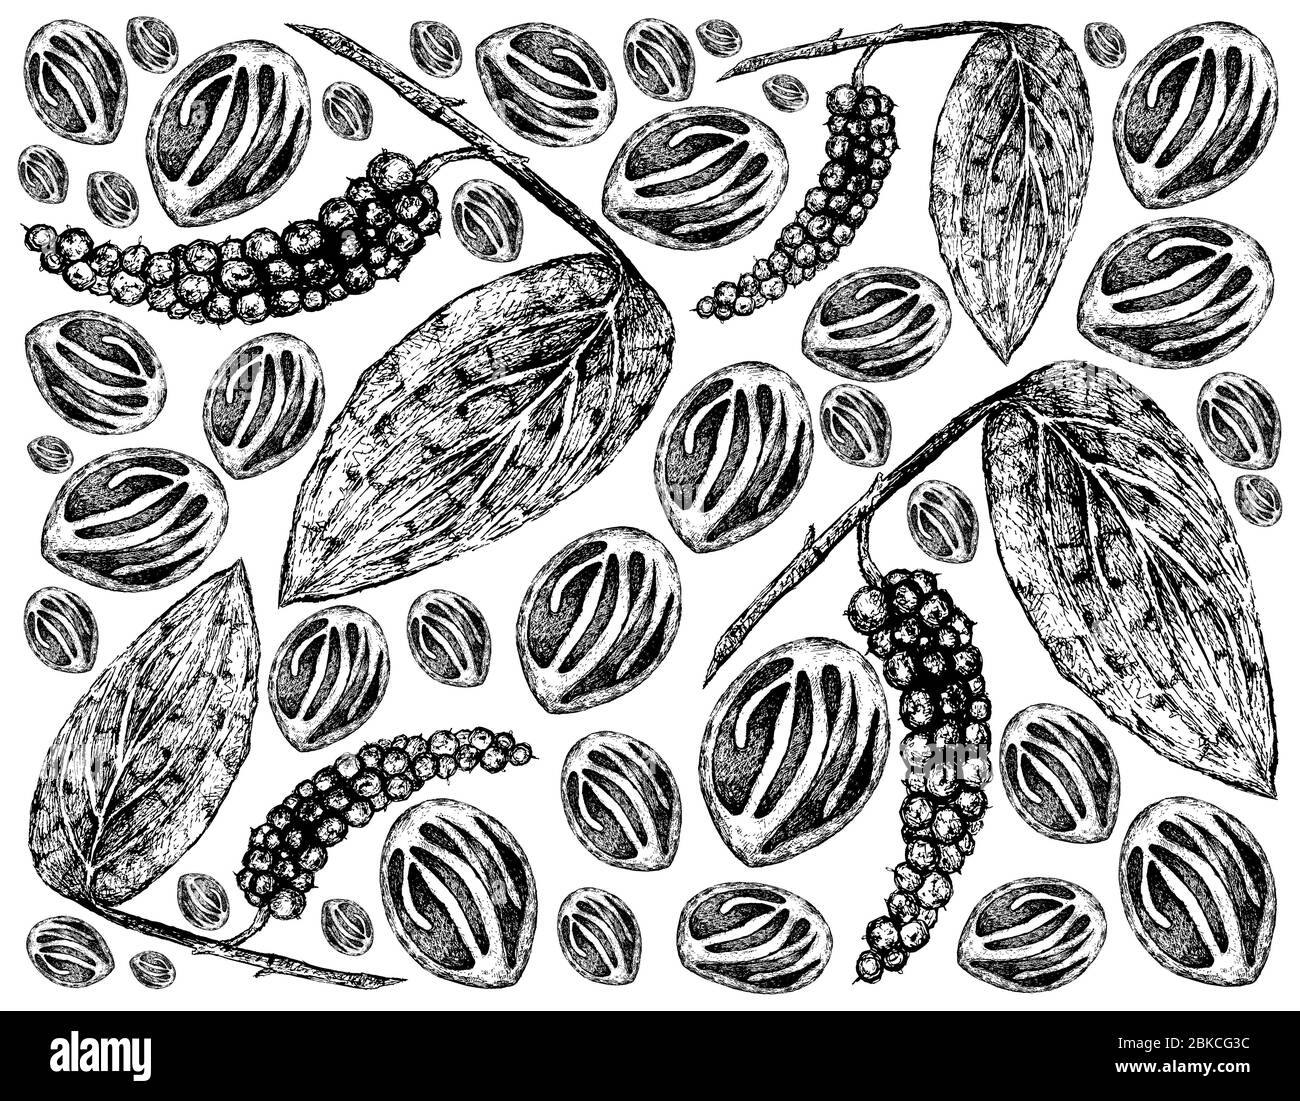 Kräuterpflanzen, Illustration von Hand Drawn Sketch Schwarzer Pfeffer oder  Pfefferkorn mit Muskatnuss, zum Würzen beim Kochen verwendet  Stockfotografie - Alamy